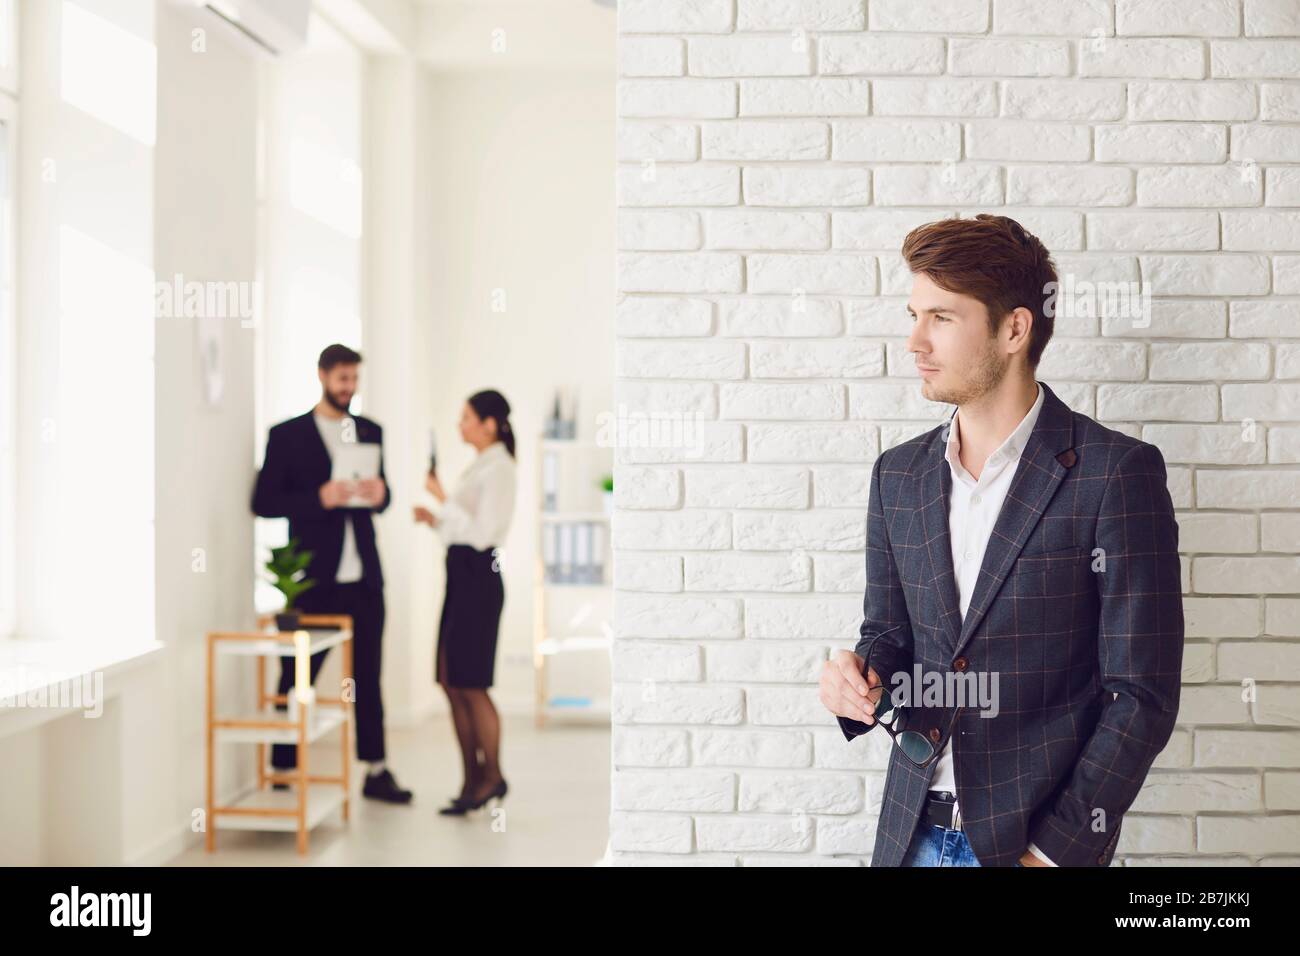 Ernsthafter Geschäftsmann in legerer Kleidung, der in einem weißen Büro an einer weißen Wand steht. Stockfoto